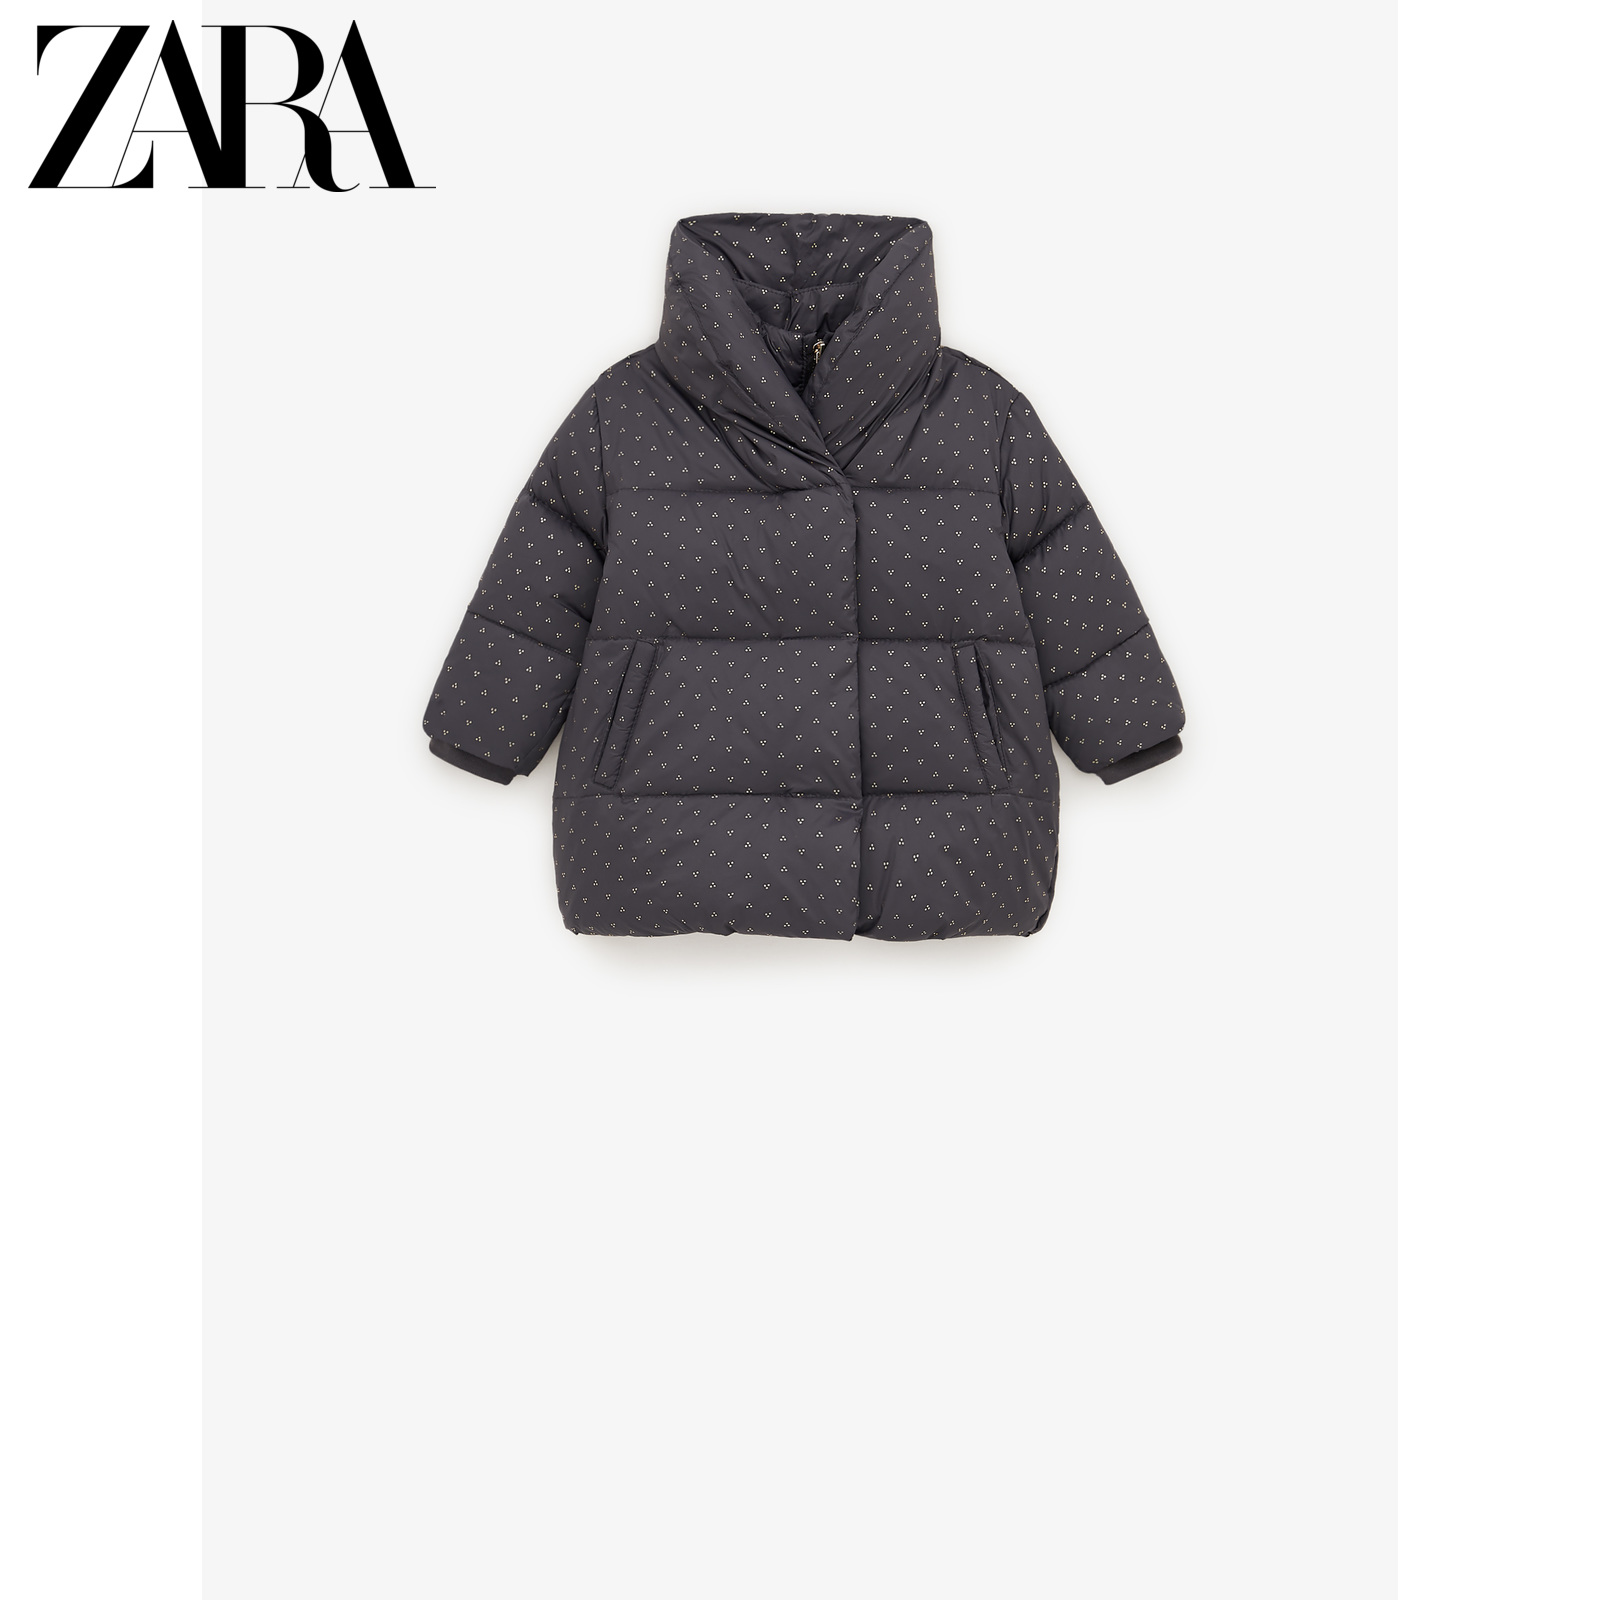 ZARA 女婴幼童  保暖亮光细节围裹领羽绒外套01938573802,降价幅度67.7%